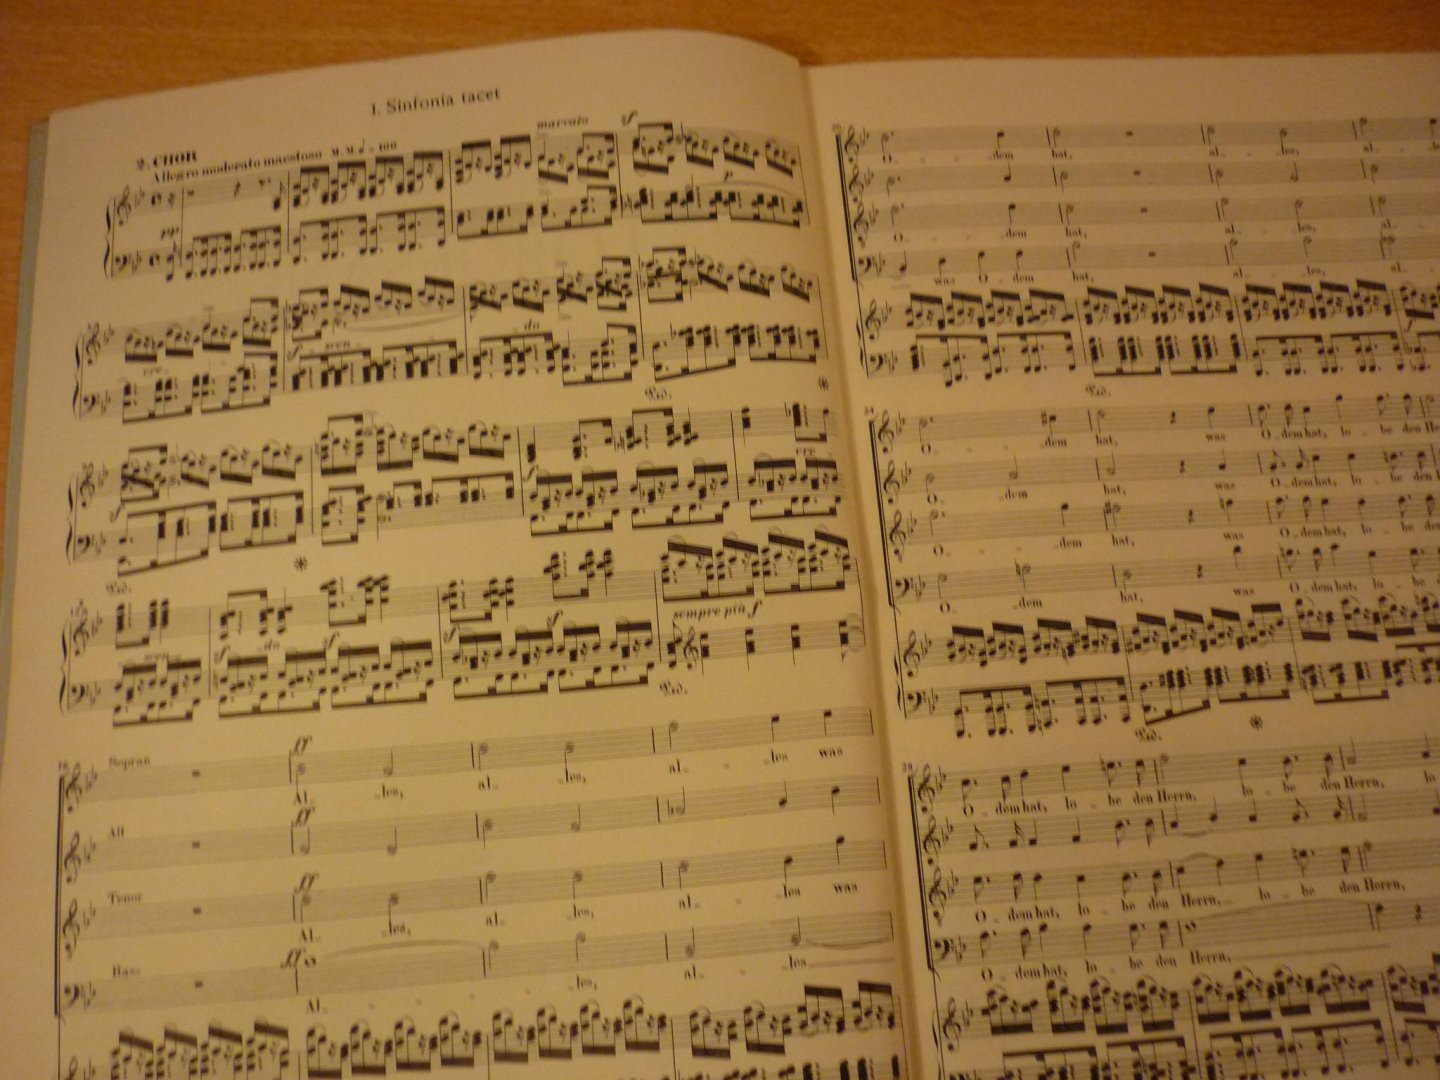 Mendelssohn-Bartholdy, Felix; (1809-1847) - Lobgesang Eine Symphonie-Kantate nach Worten der Heiligen Schrift; op.52; Klavierauszug der Kantate